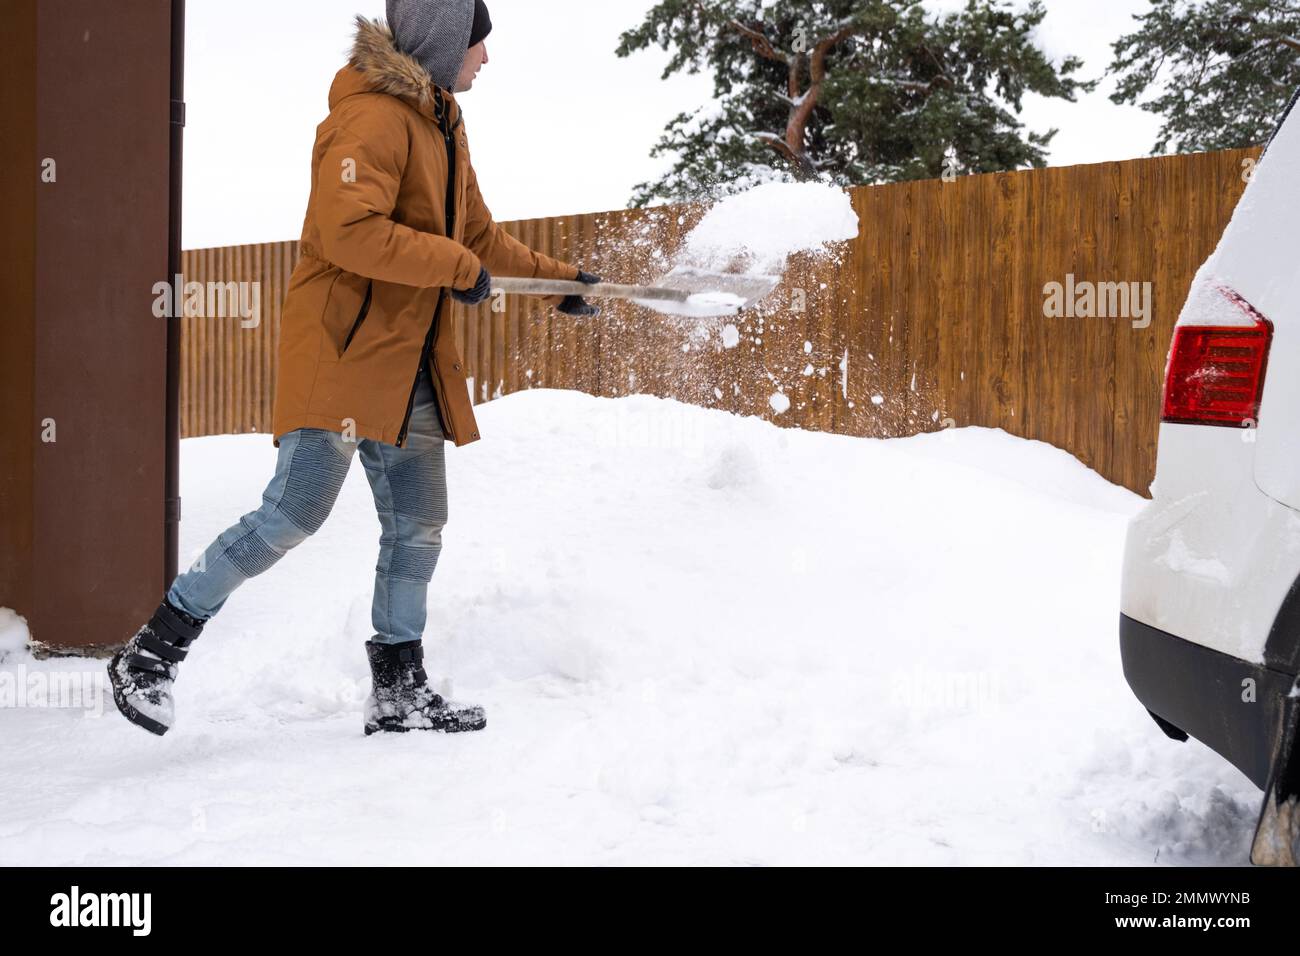 Ein Mann im Winter reinigt Schnee mit einer Schaufel im Hof eines Hauses auf dem Parkplatz. Schneefall, schwierige Wetterbedingungen, das Auto steht still, digg Stockfoto